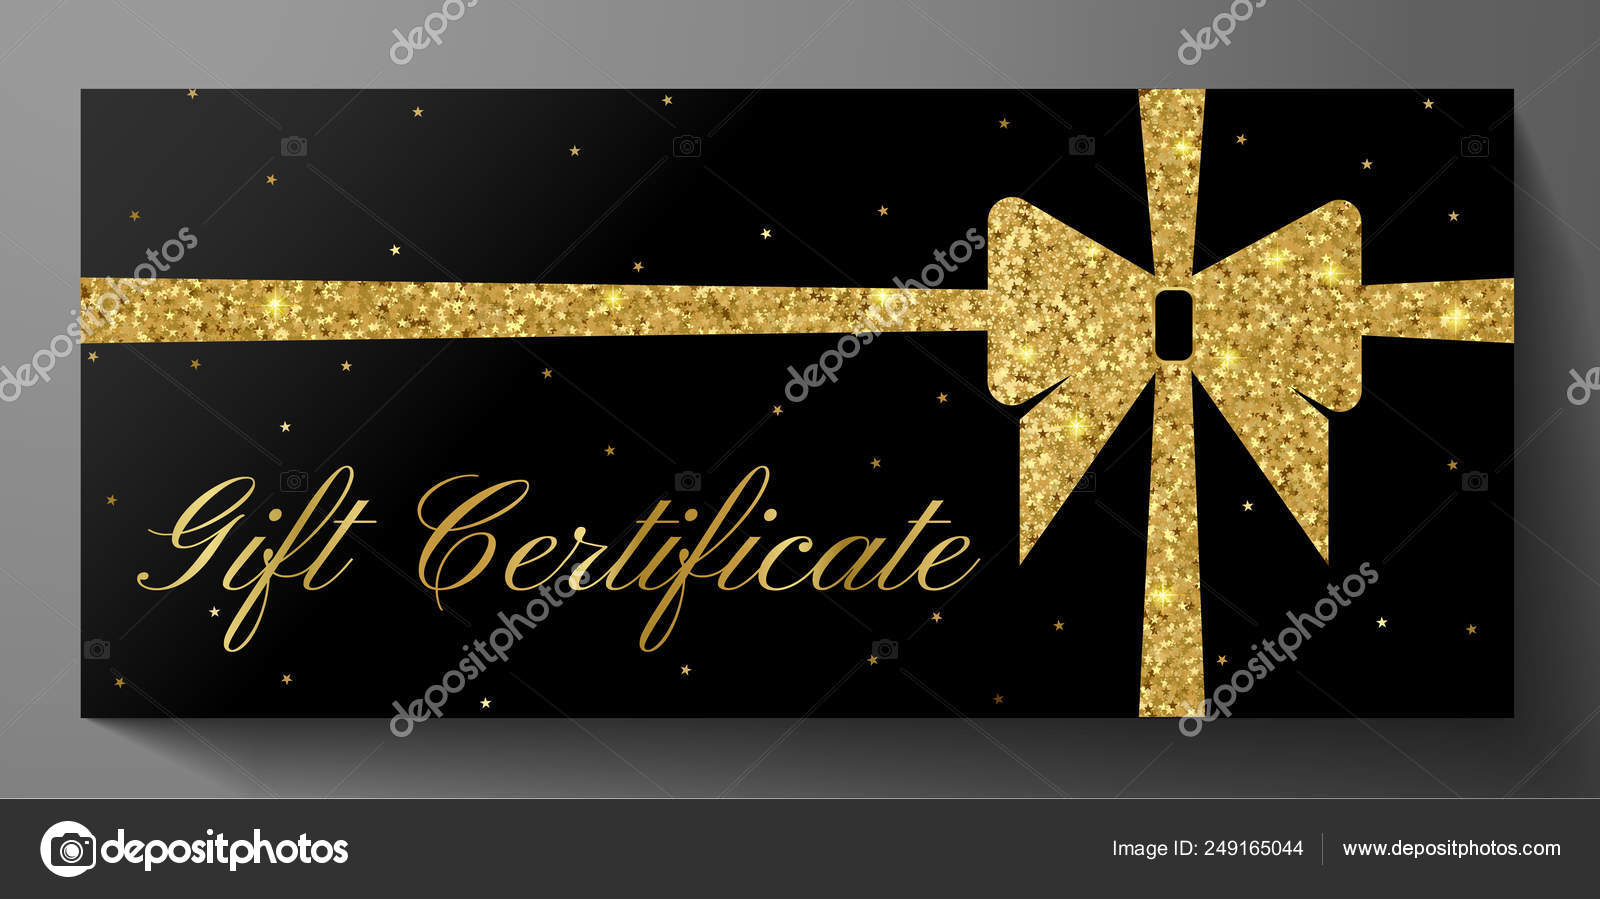   Buono Regalo  - Stampa - Logo glitterato: Gift  Cards